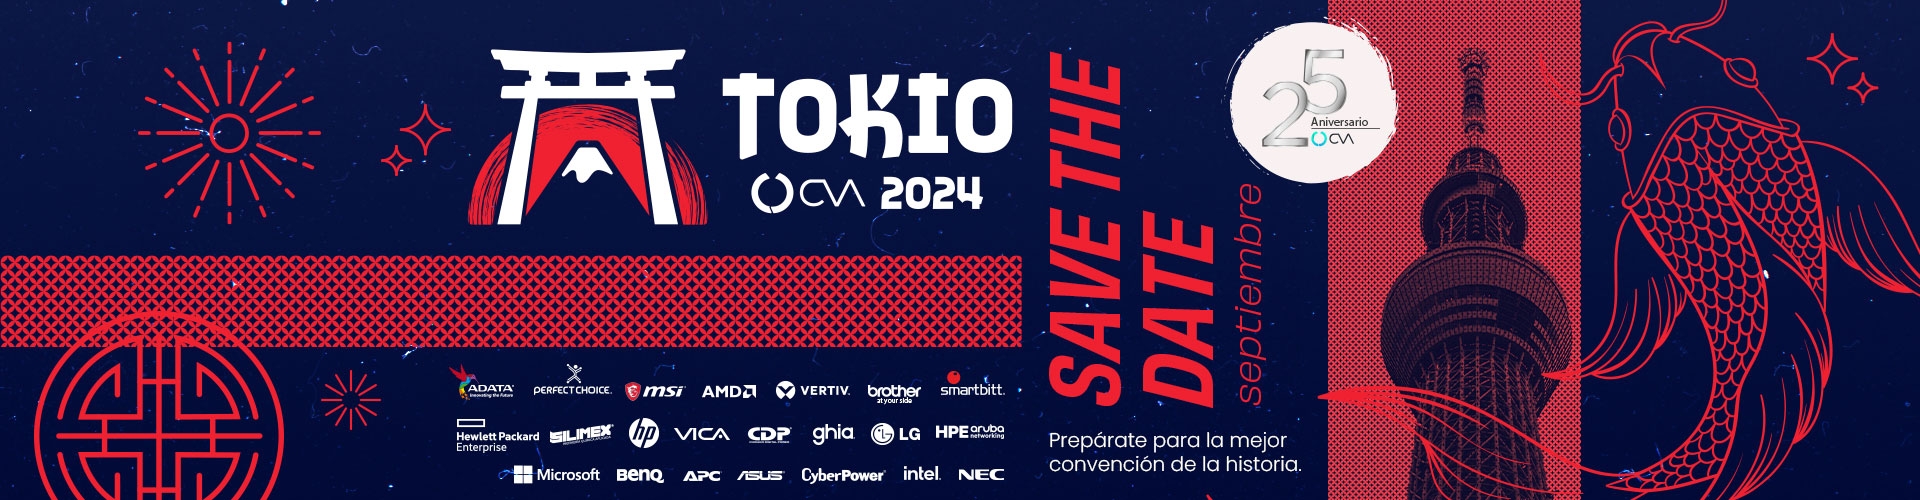 Convención CVA Tokio 2024